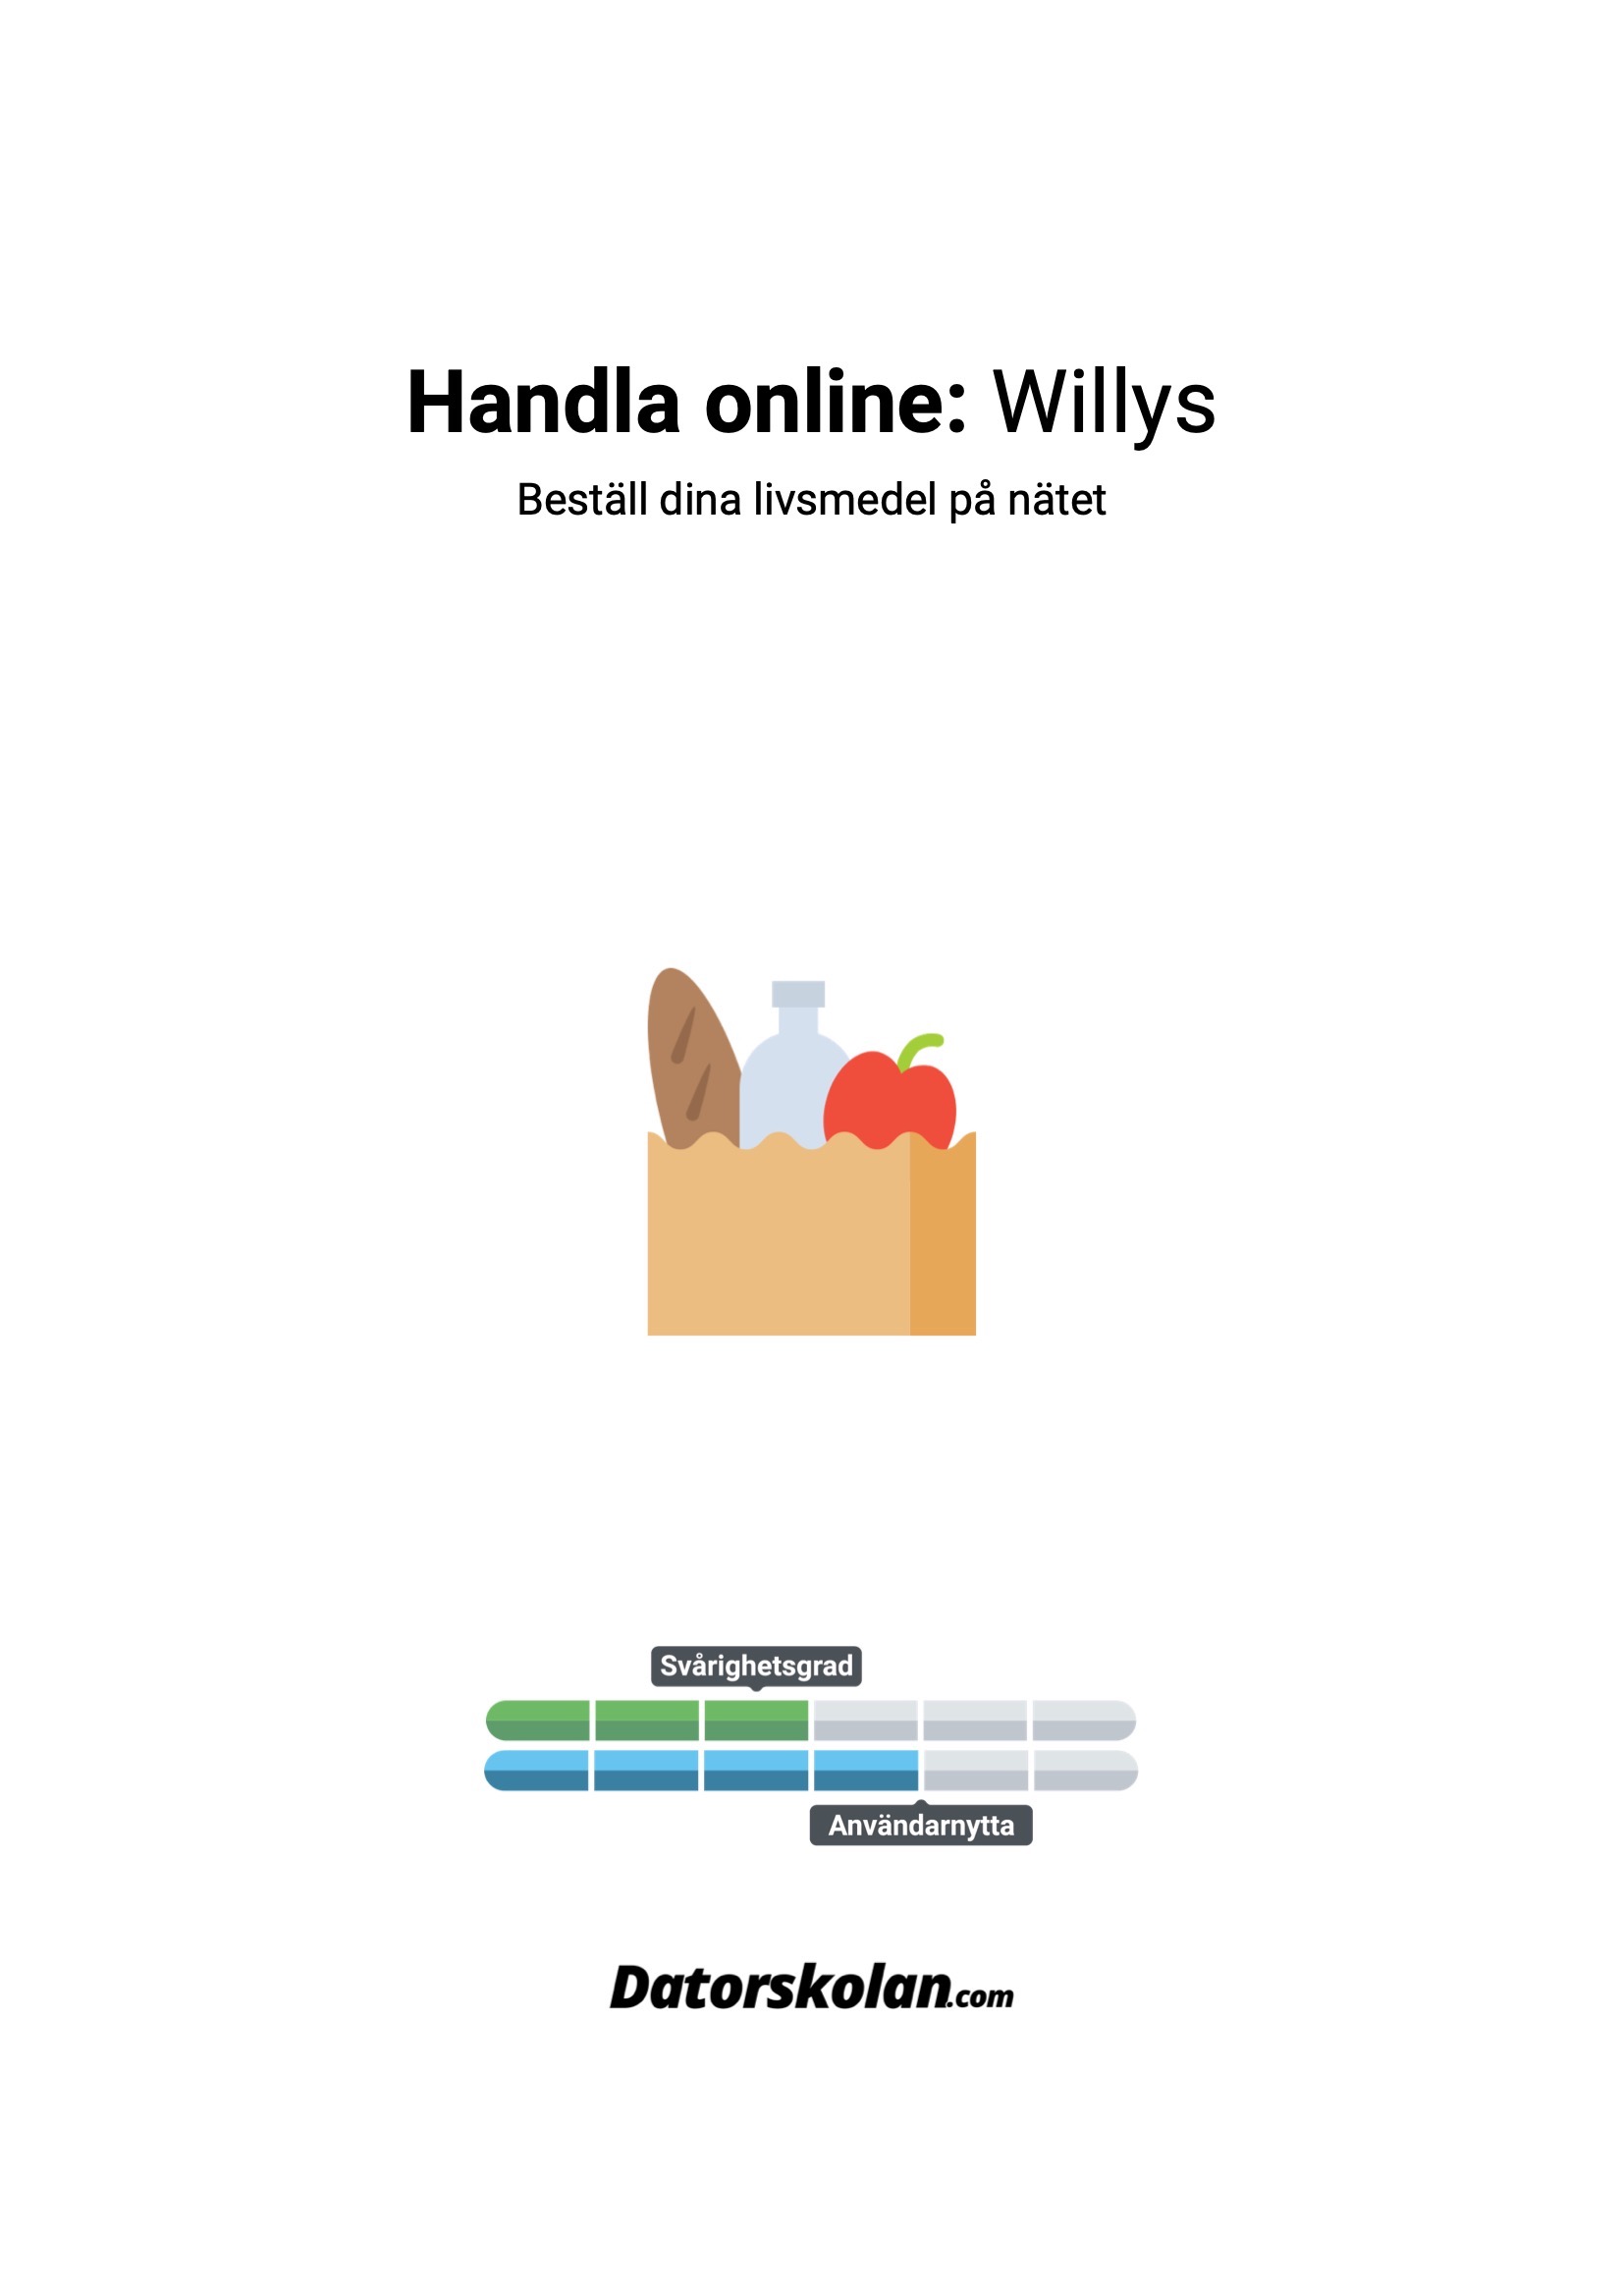 Framsidan av DigiGuiden som handlar om att handla online hos Willys